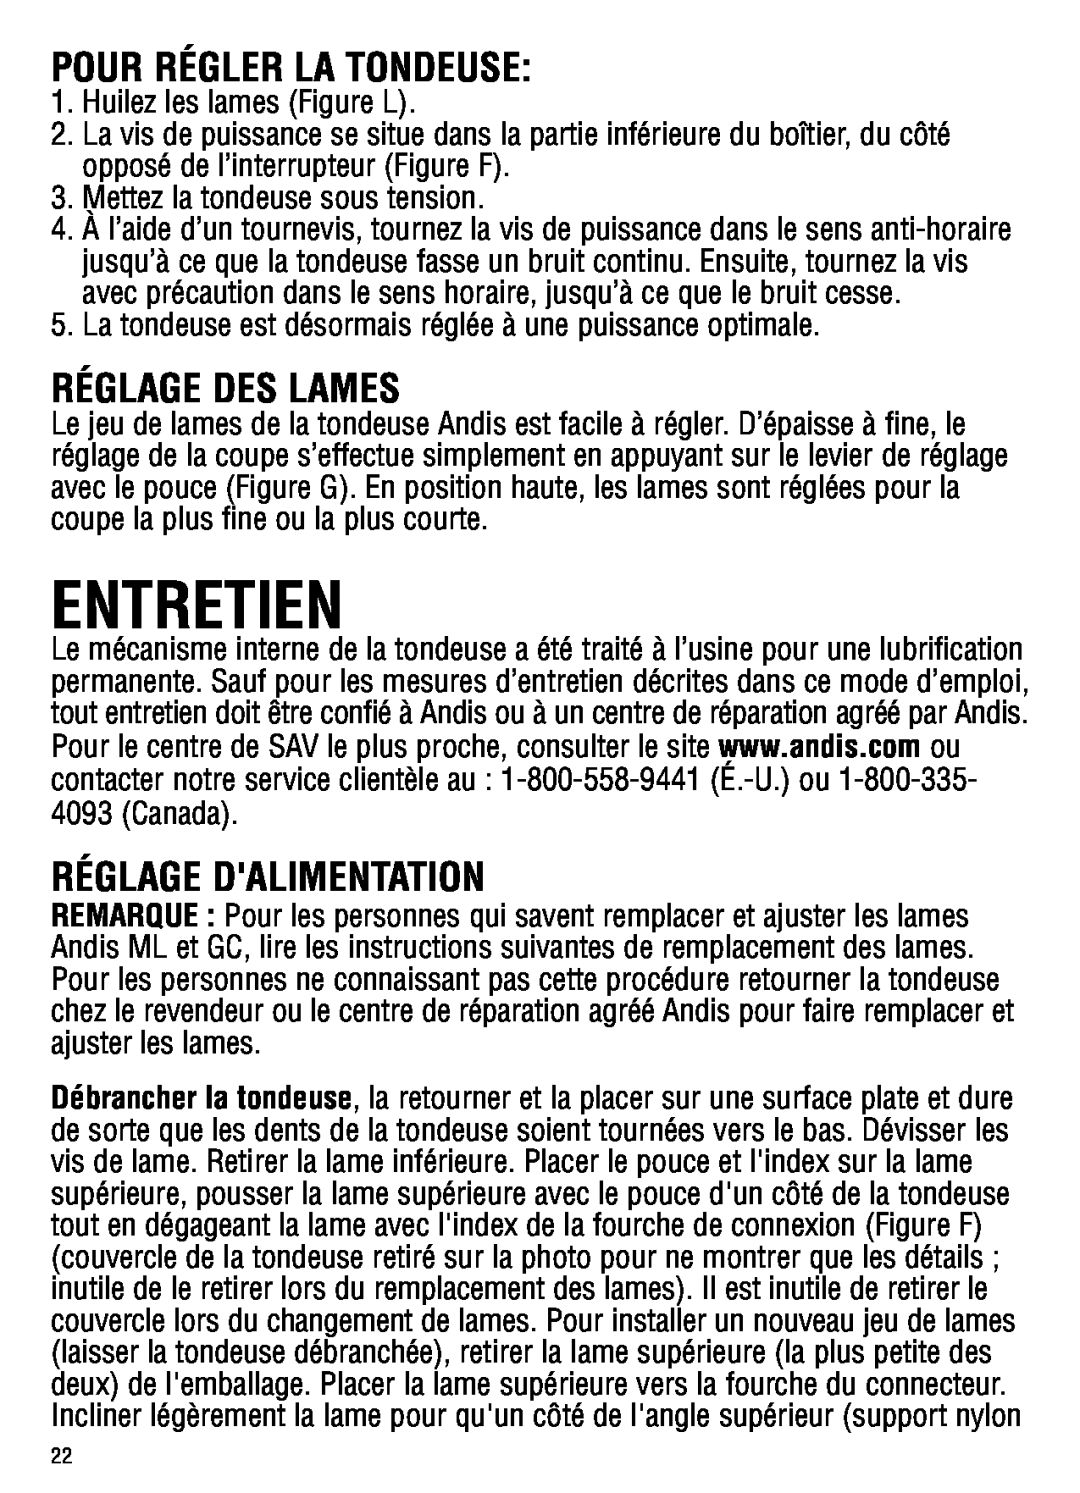 Andis Company ML Entretien, Pour Régler La Tondeuse, Réglage Des Lames, Réglage Dalimentation, Huilez les lames Figure L 